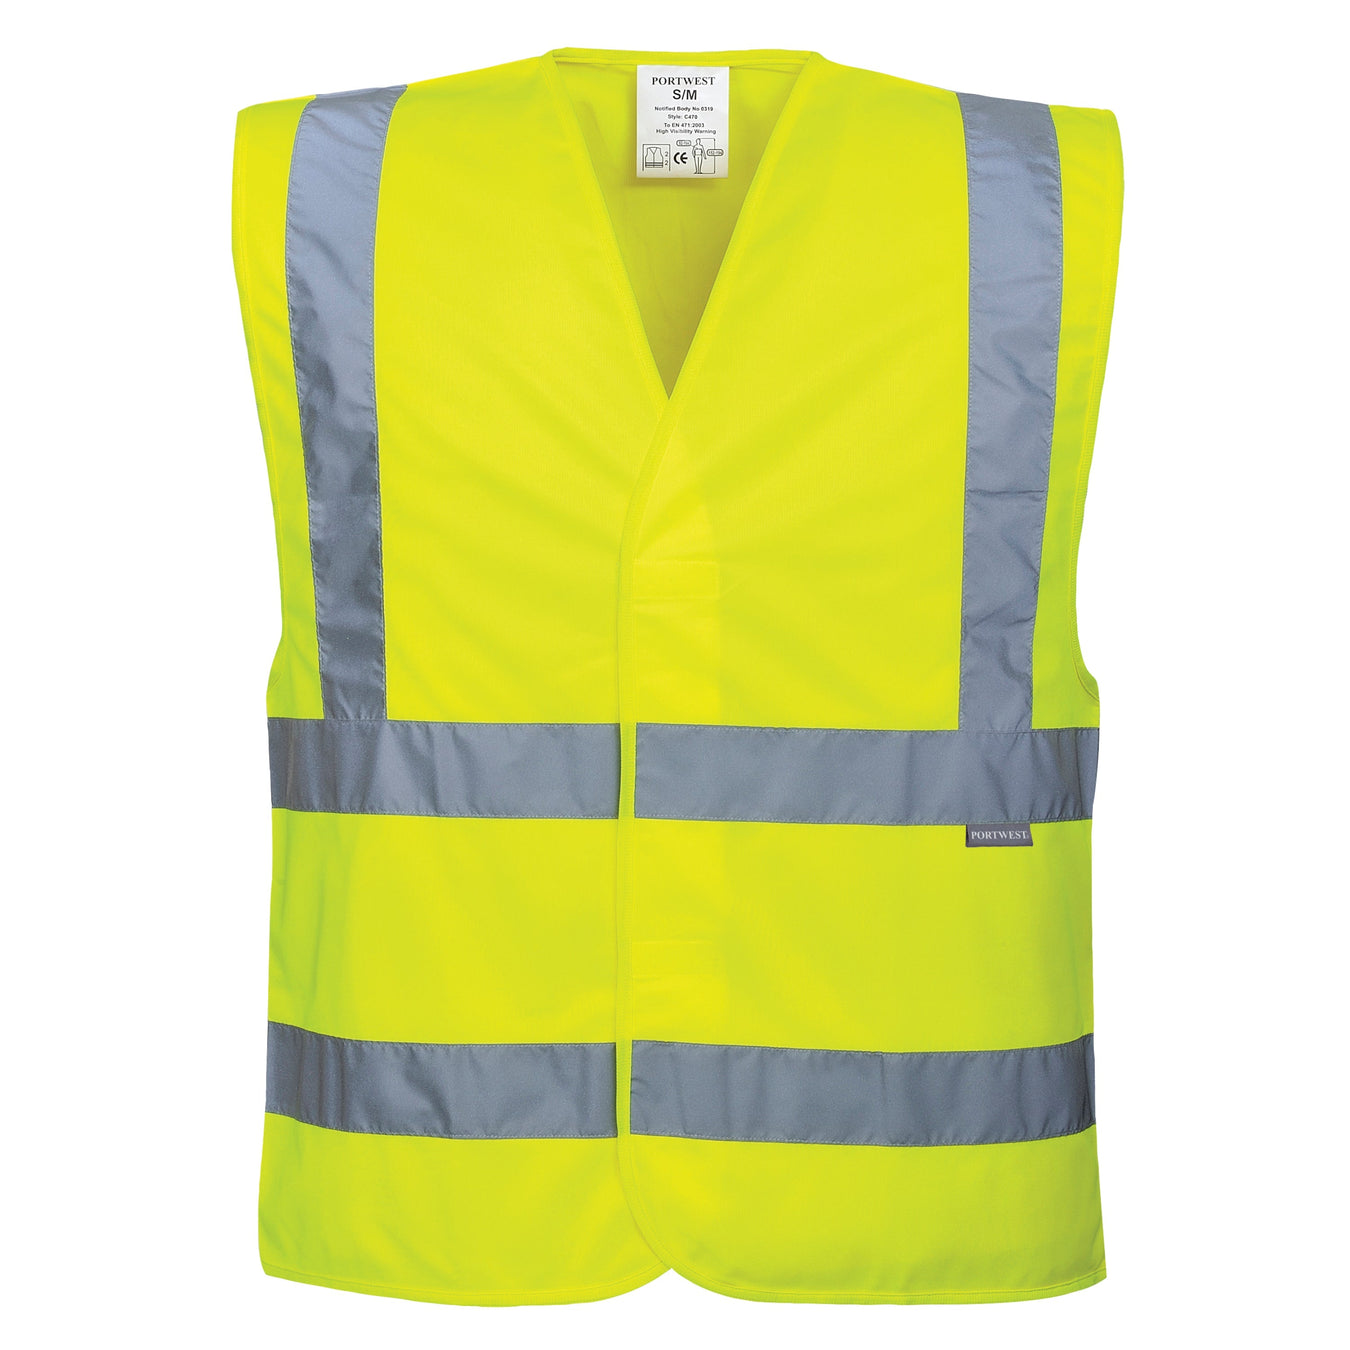 Portwest® Safety Vests